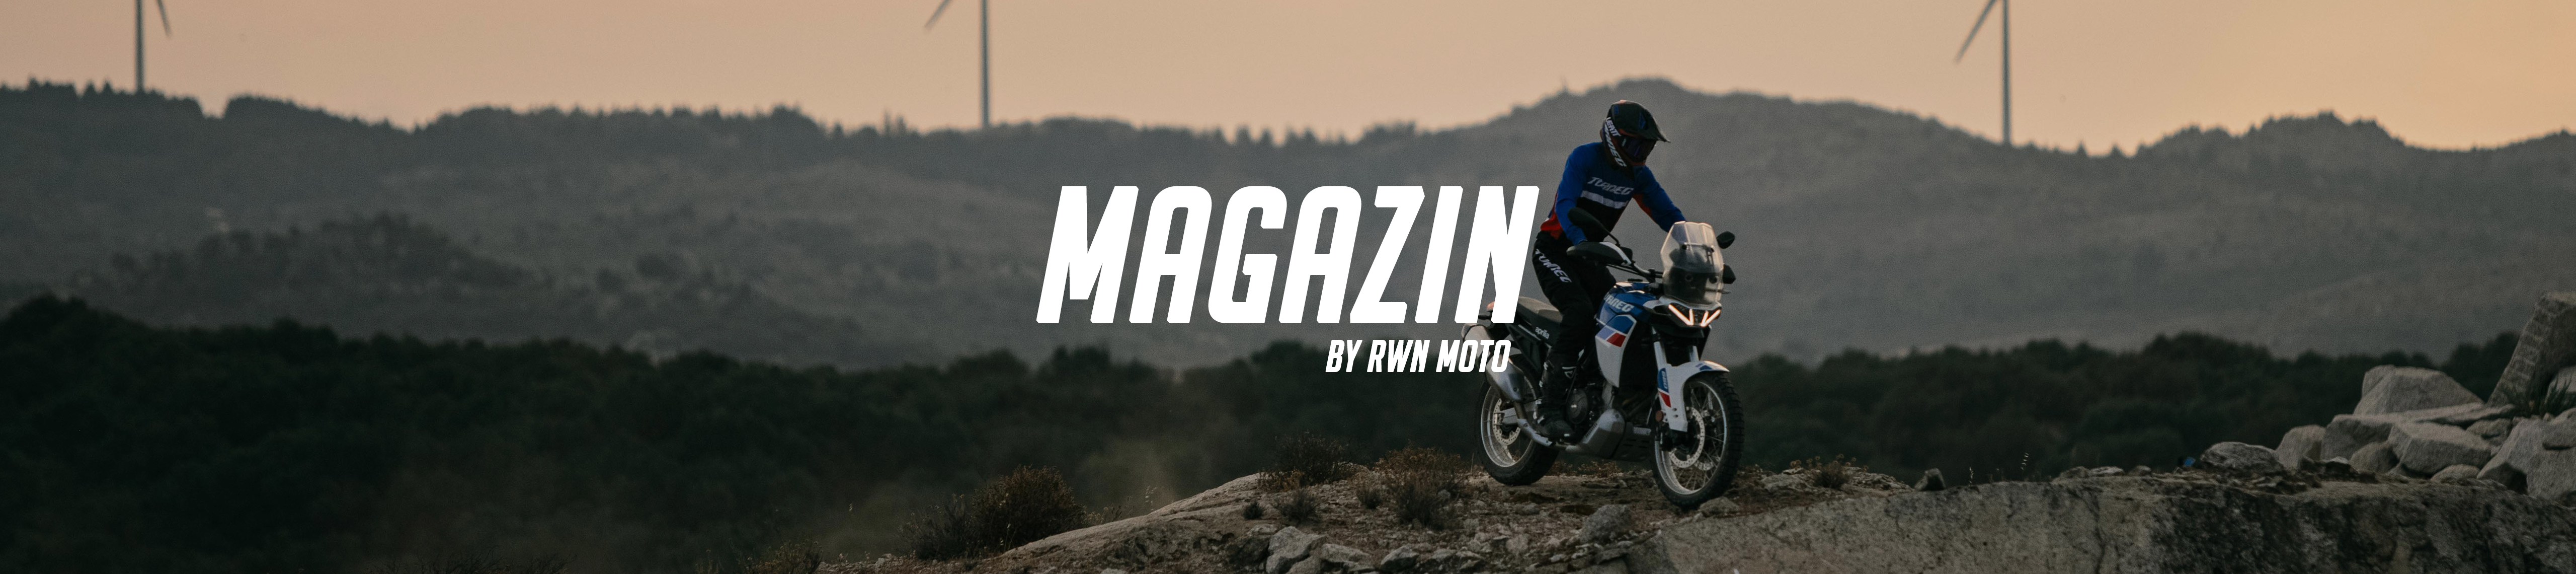 RWN-Moto-Magazin_01